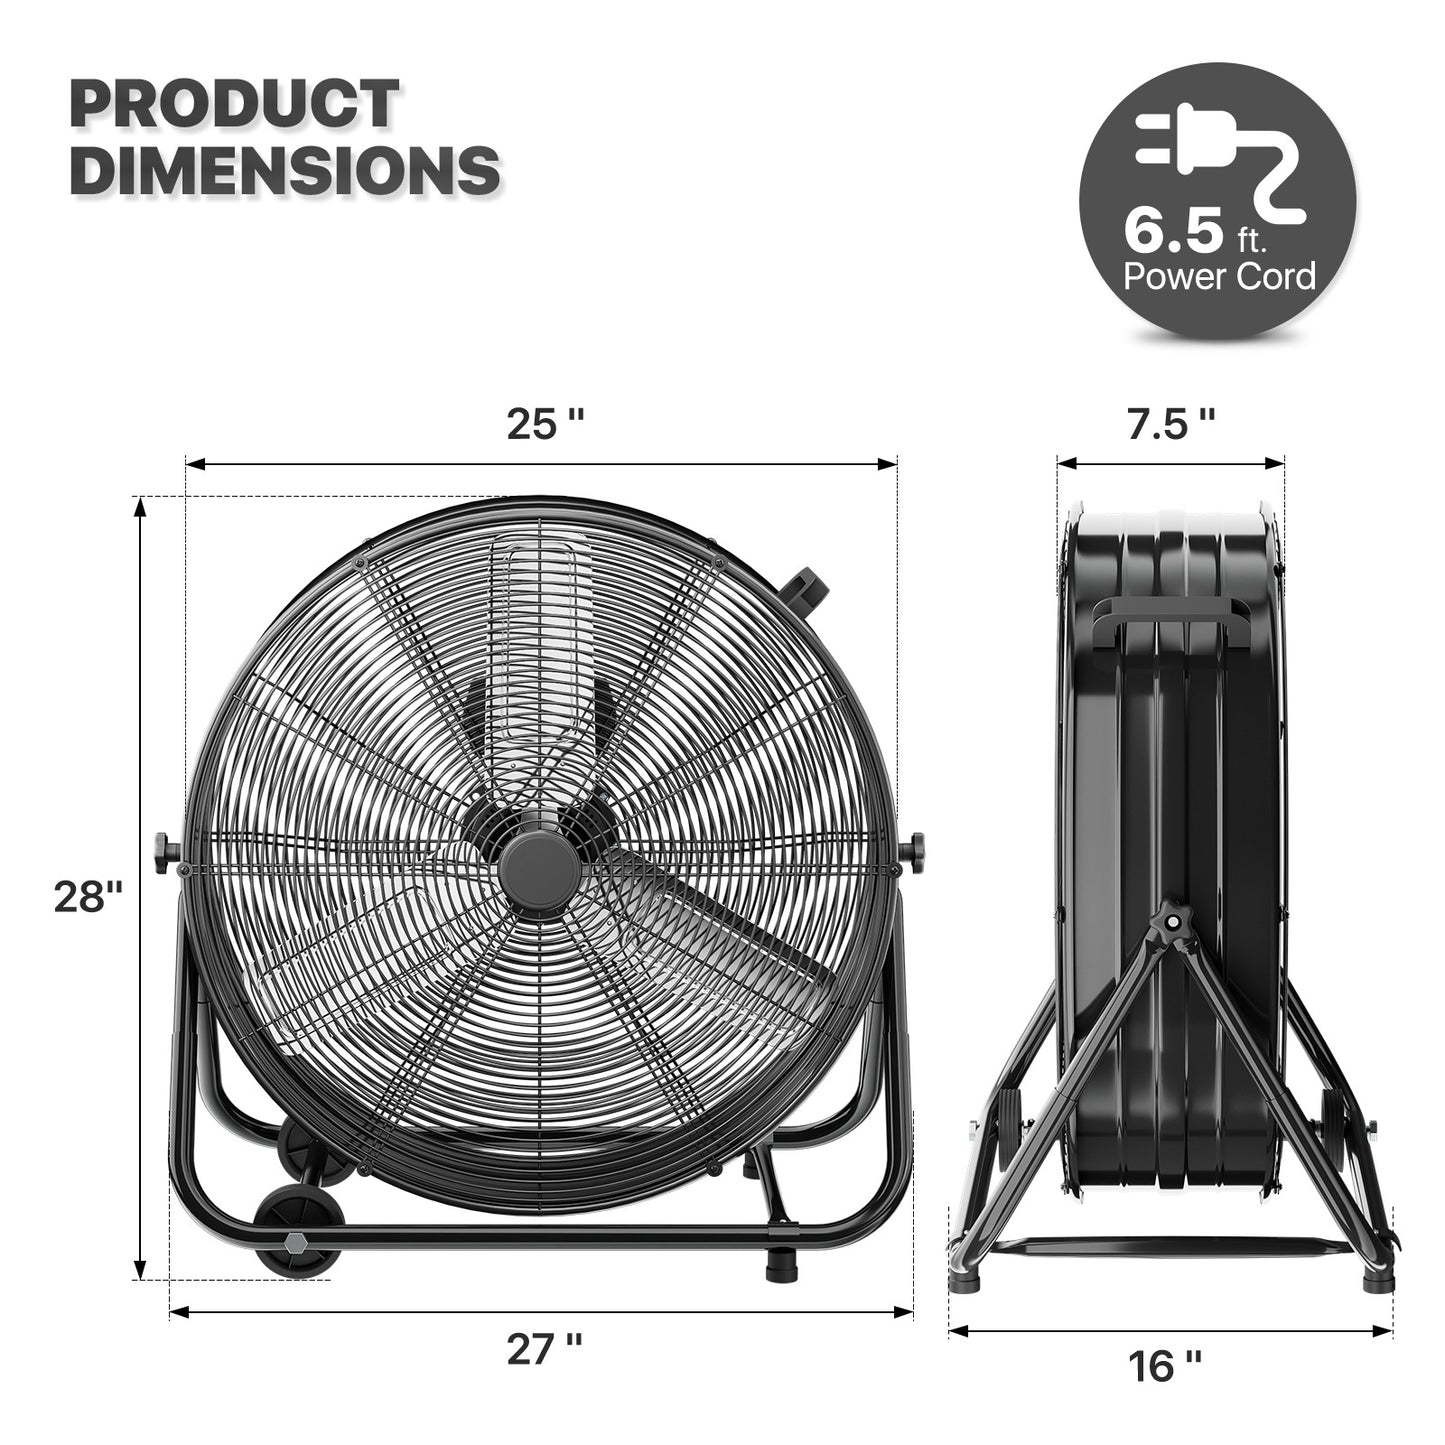 24" Rolling Floor Fan - 3 Speeds - Adjustable Tilt